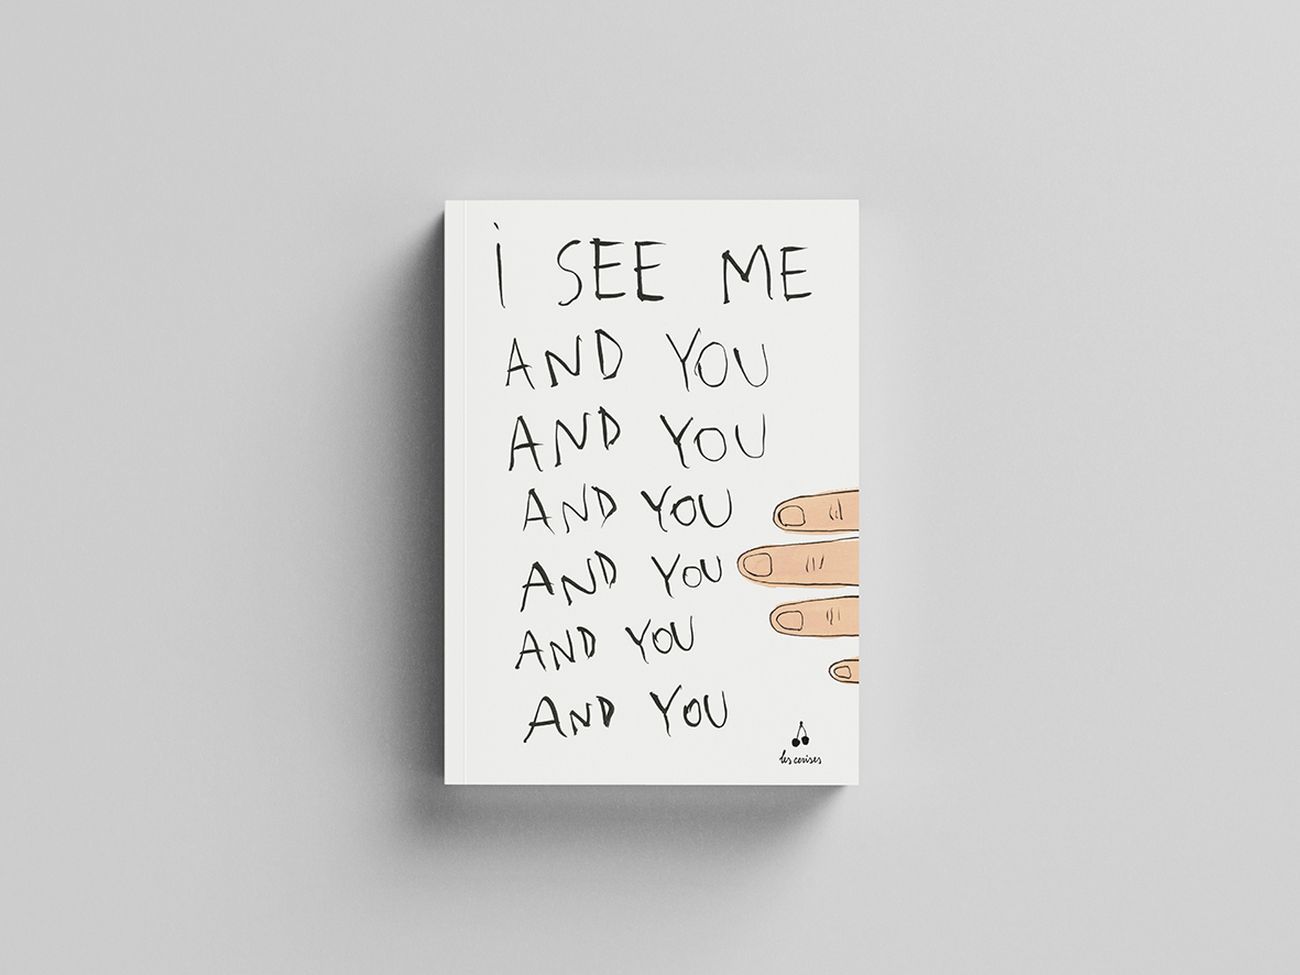 Adelaide Cioni - I see me. And you and you and you (Les cerises, Parigi-Roma-Bolzano 2020)